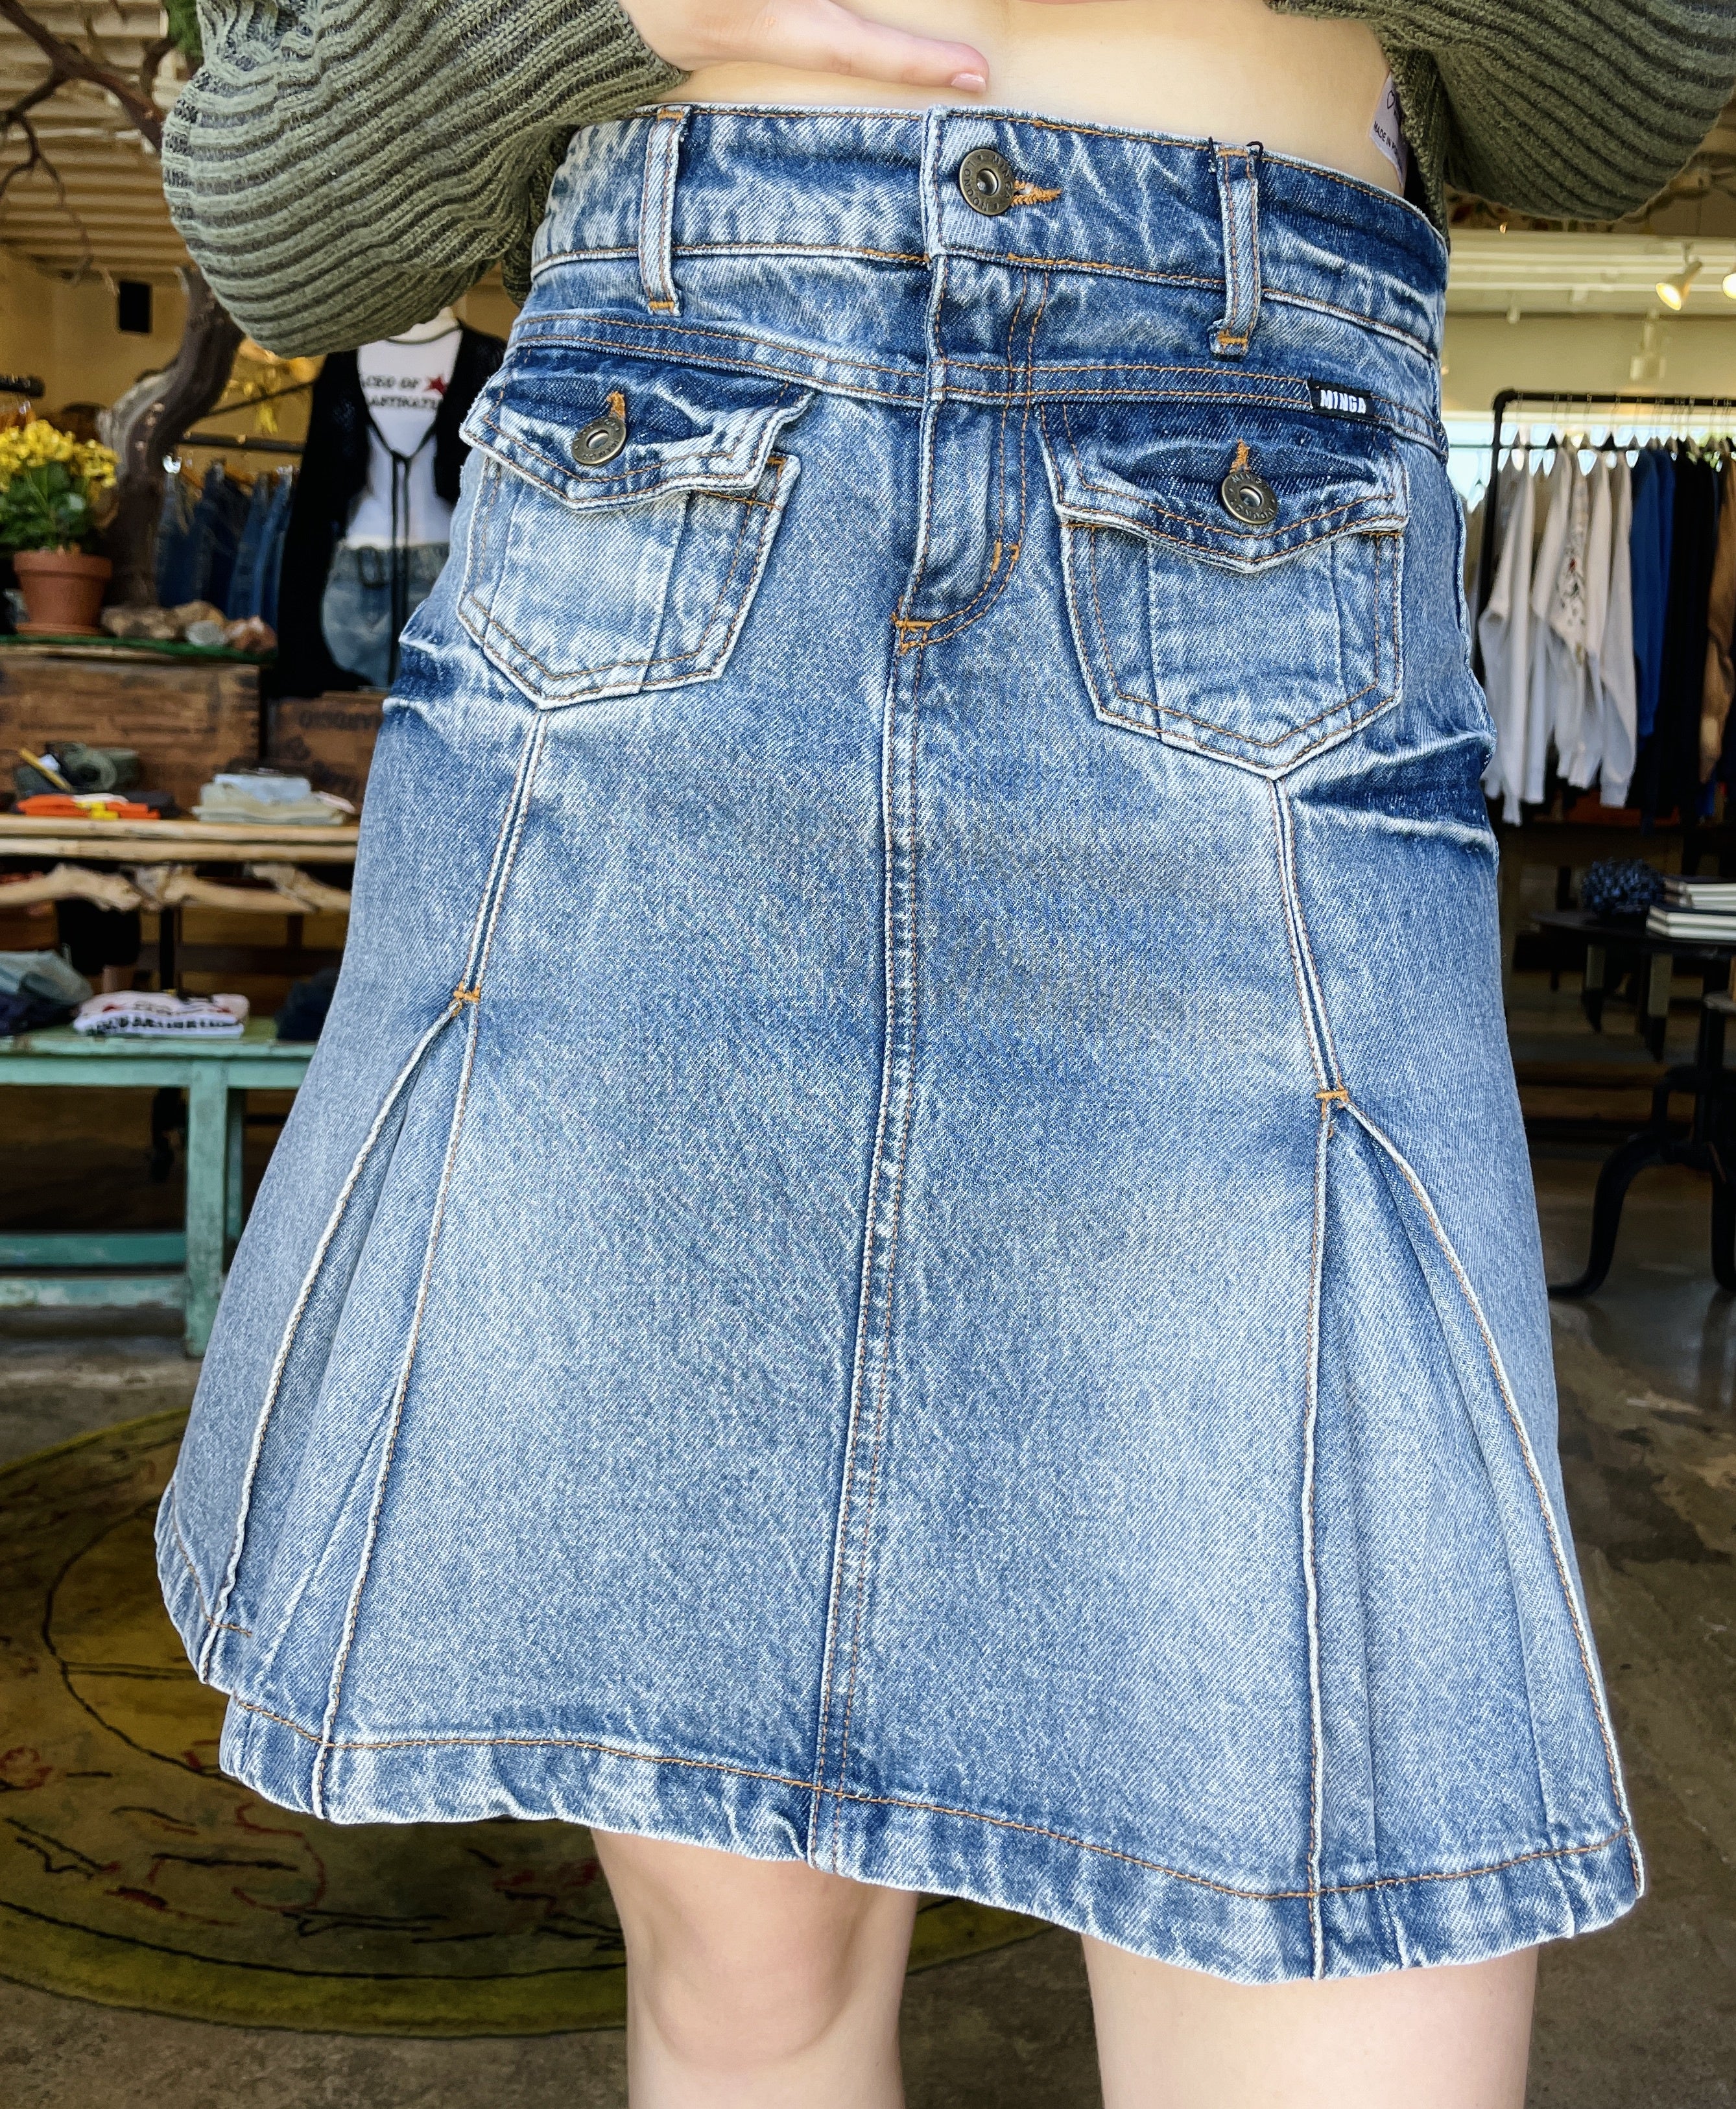 Denim Pleated Midi Skirt